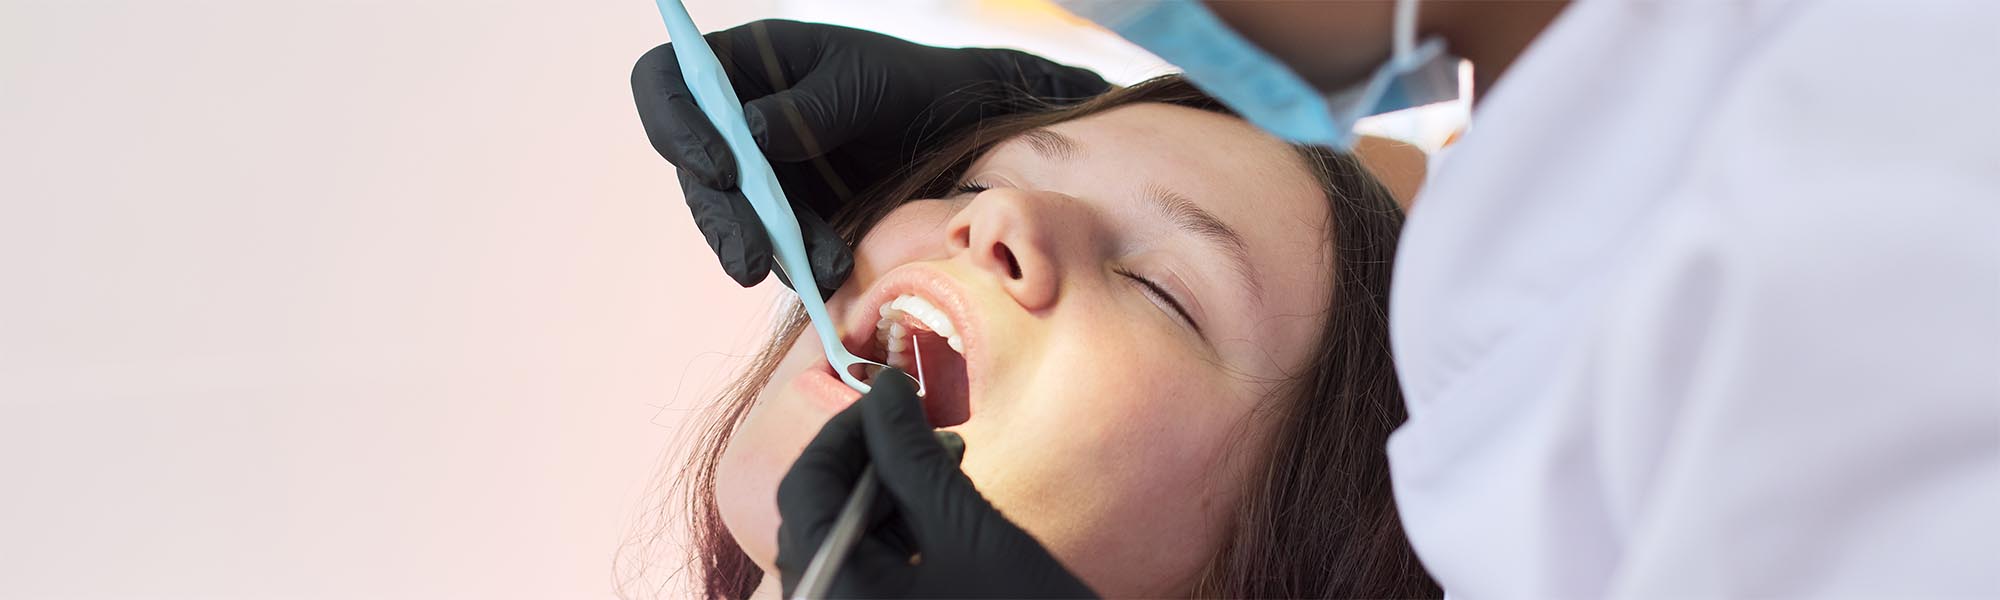 Sedation Dentistry in Carson CA